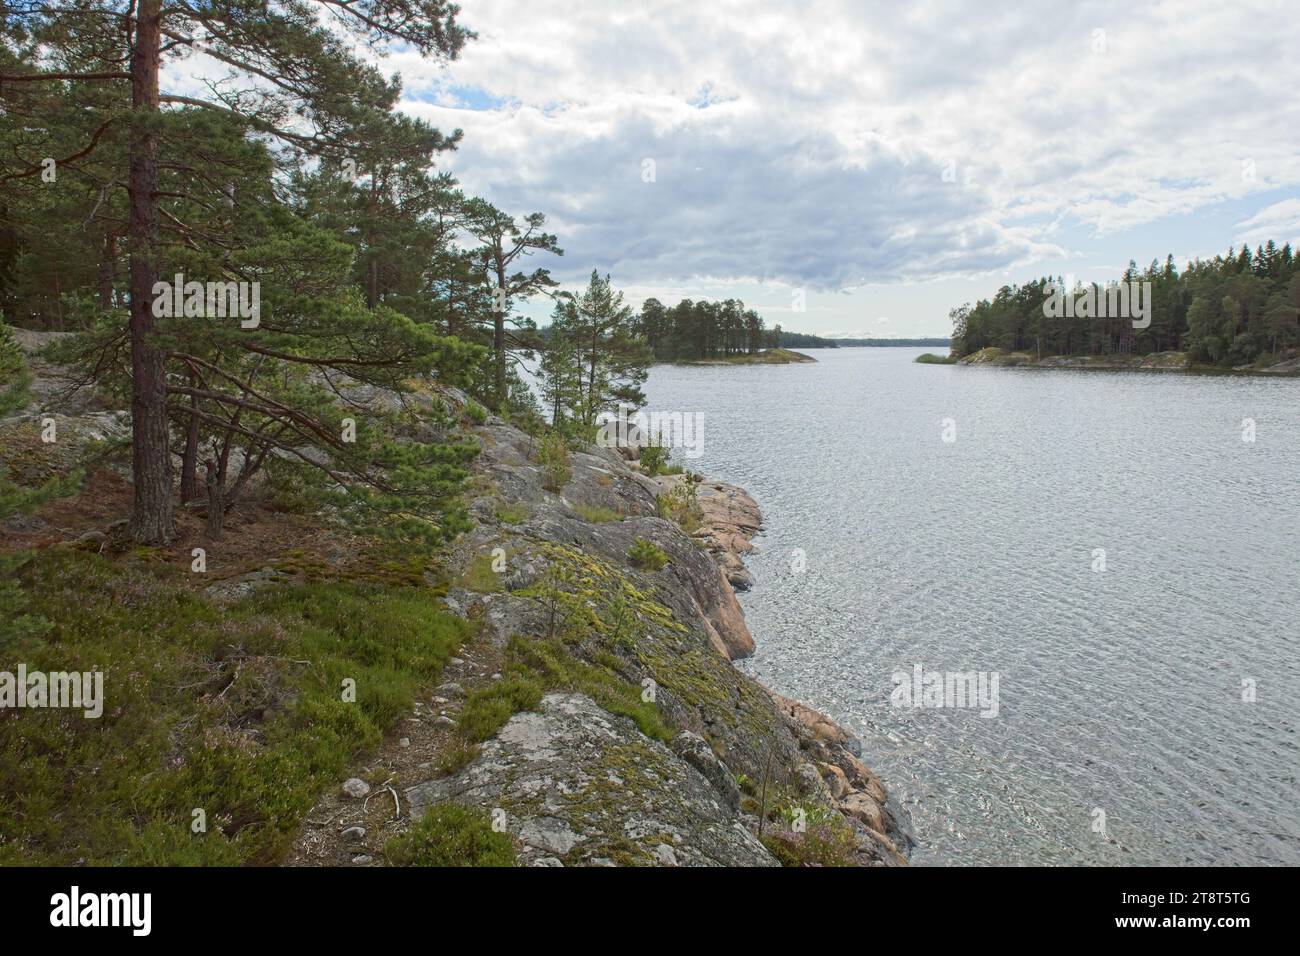 Rocky seashore on the island of Linlo in cloudy autumn weather, Kirkkonummi, Finland. Stock Photo